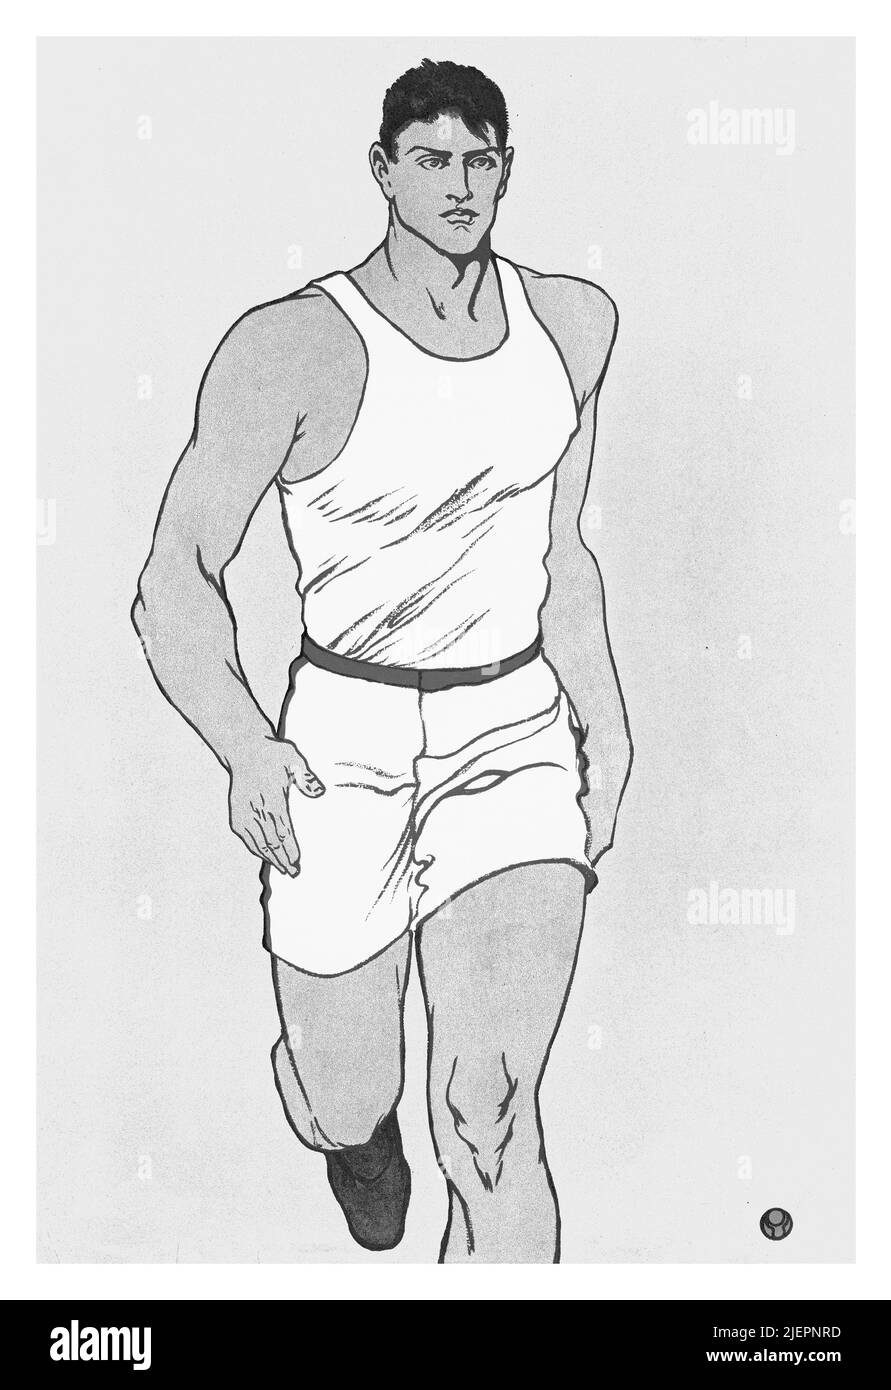 Eine Illustration aus dem frühen 20.. Jahrhundert von Edward Penfield (1866-1925) auf dem Cover von Collier's, einem amerikanischen Magazin von allgemeinem Interesse, das einen Athleten beim Laufen zeigt. Stockfoto